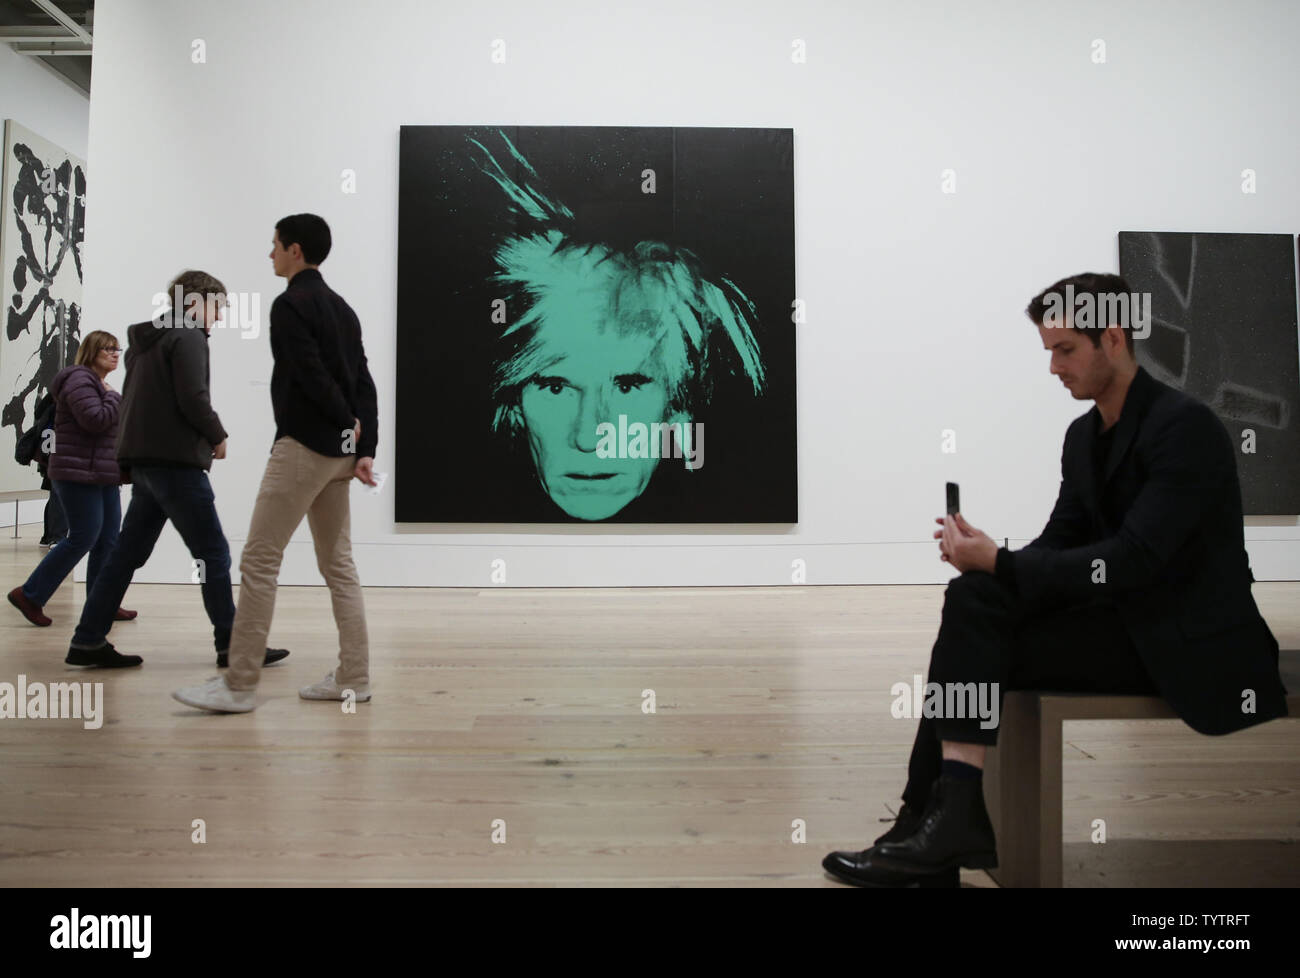 Menschen stehen unter Werke von Andy Warhol auf die Vorschau für die kommende Ausstellung "Andy Warhol - von A nach B und wieder zurück" am Whitney Museum der amerikanischen Kunst in New York City am 10. November 2018. Andy Warhol - von A nach B und wieder öffnet, die der Öffentlichkeit am 12. November und läuft bis zum 31. März 2019 Foto von John angelillo/UPI Stockfoto